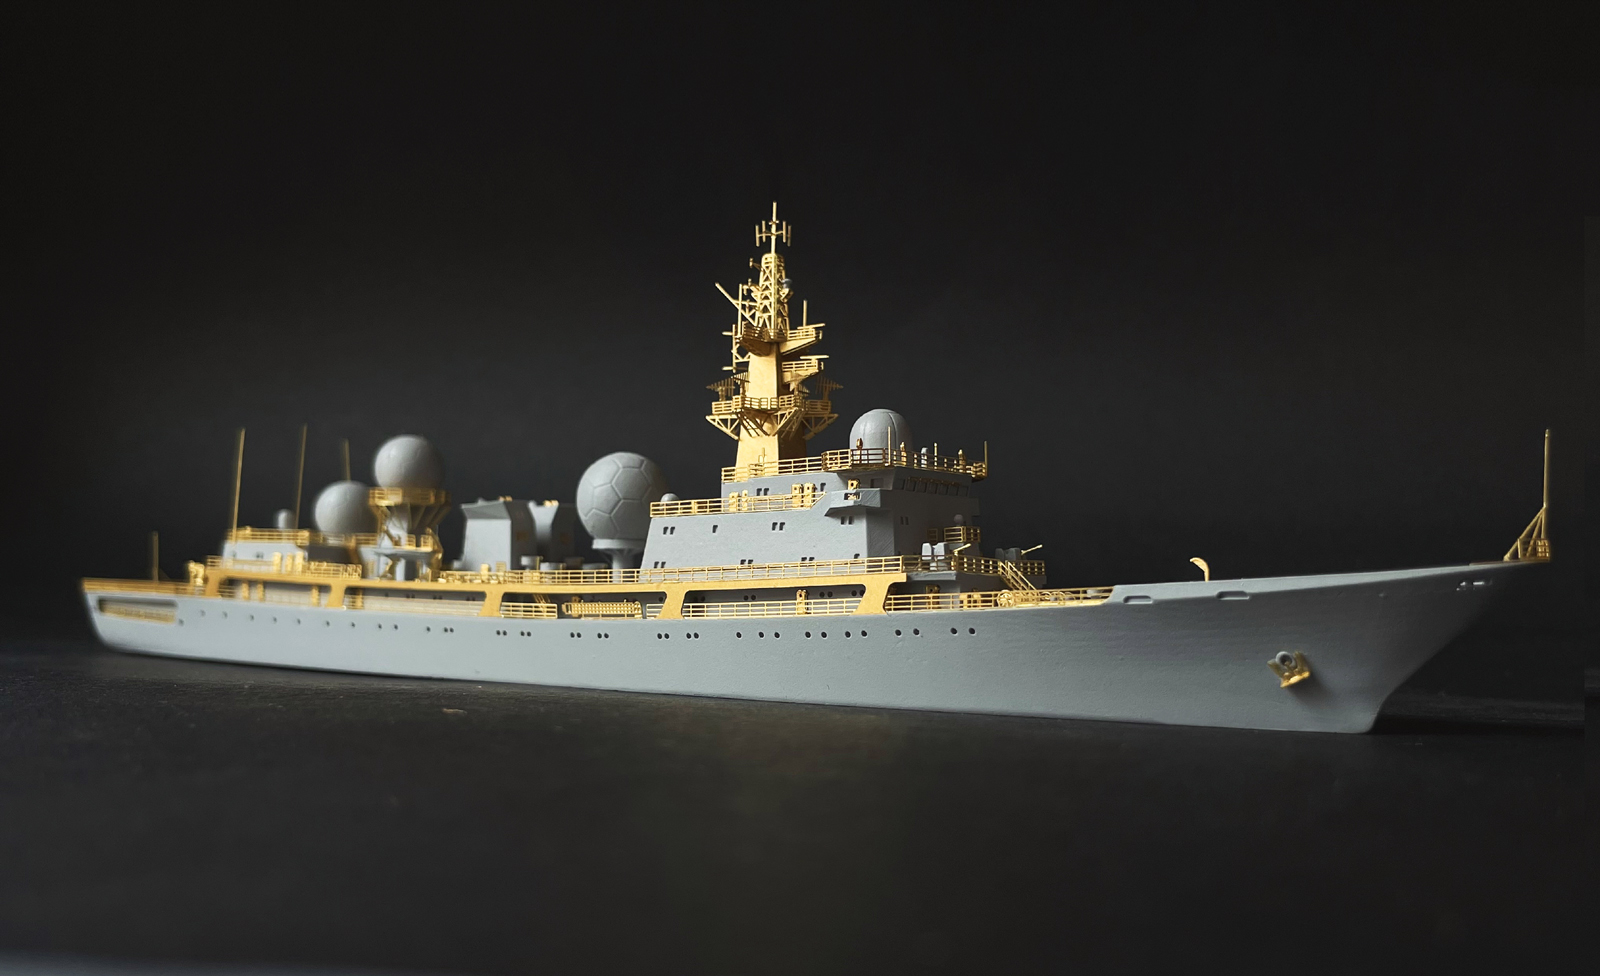 易微模型新品-1/700 中国海军815G型电子侦察船天王星舰_其他国产模型 